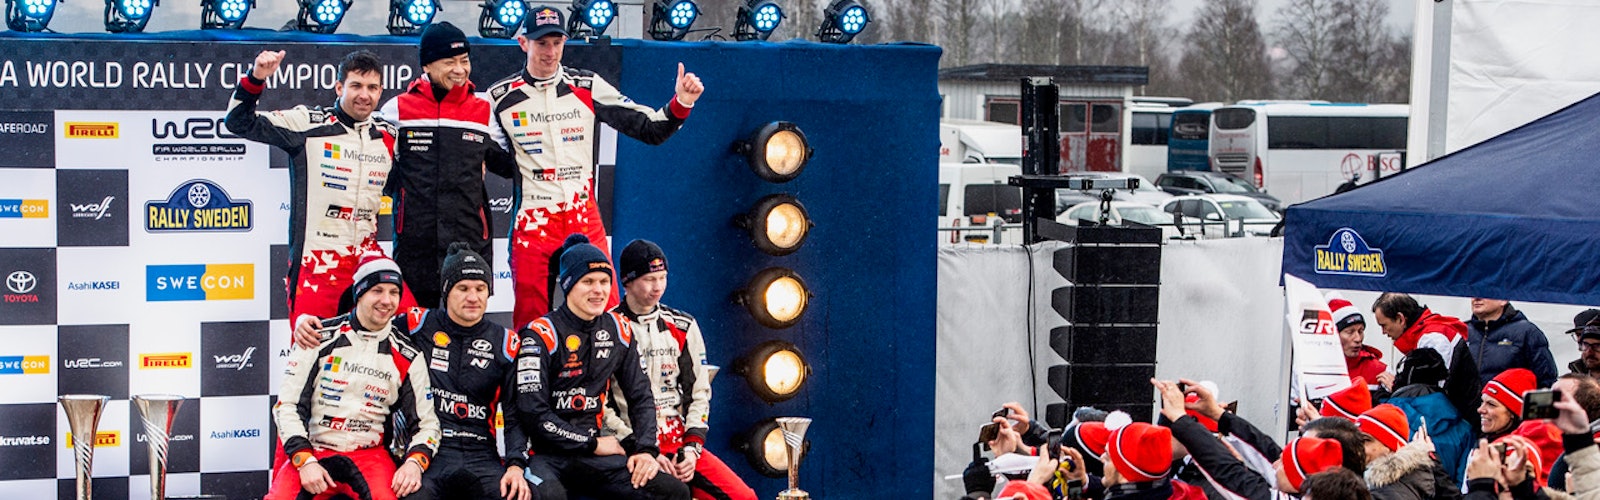 Rally Sweden podium 2020